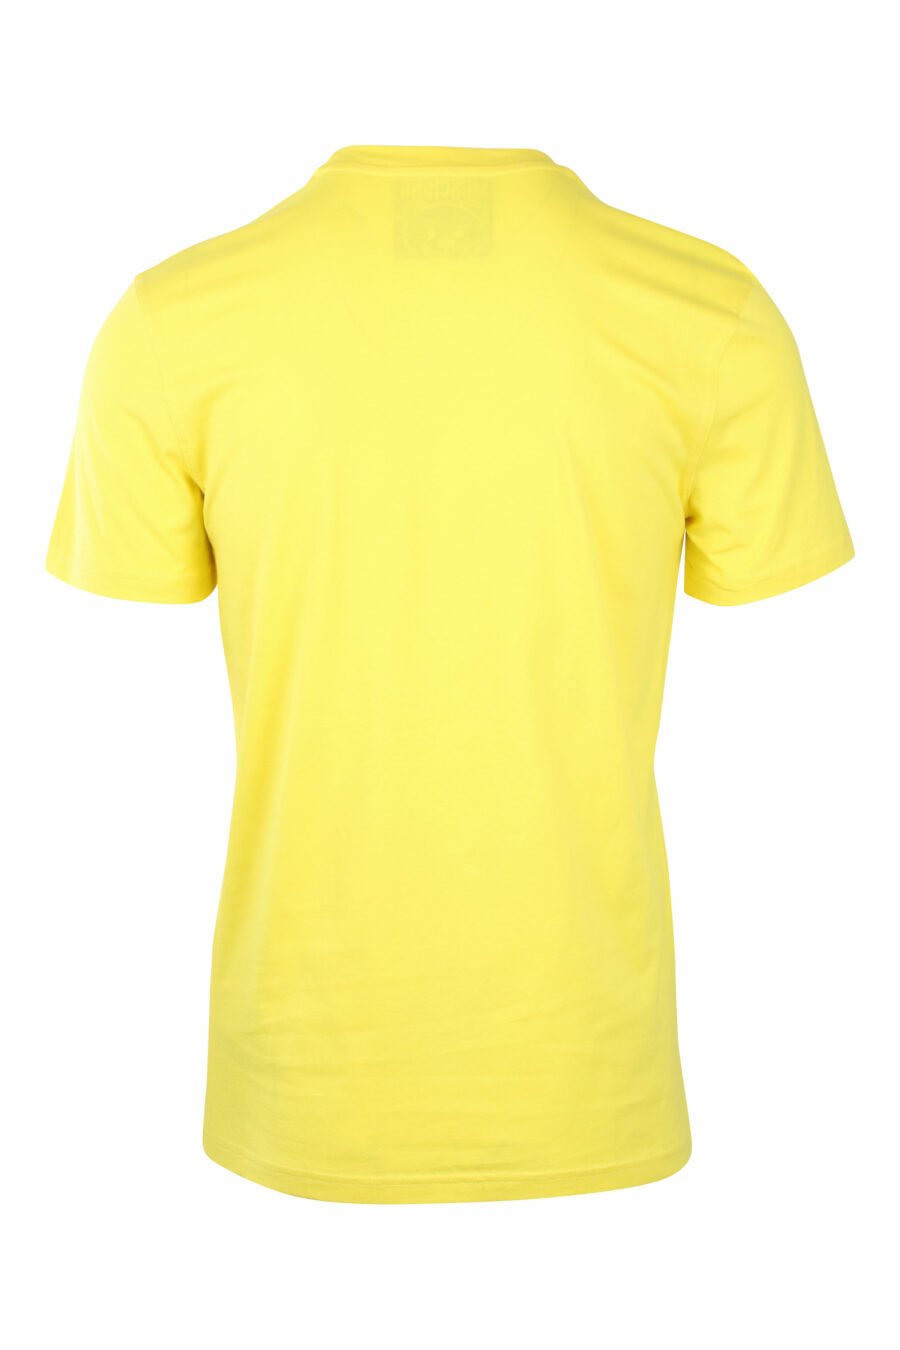 T-shirt jaune avec ours monochrome minilogue - IMG 1409